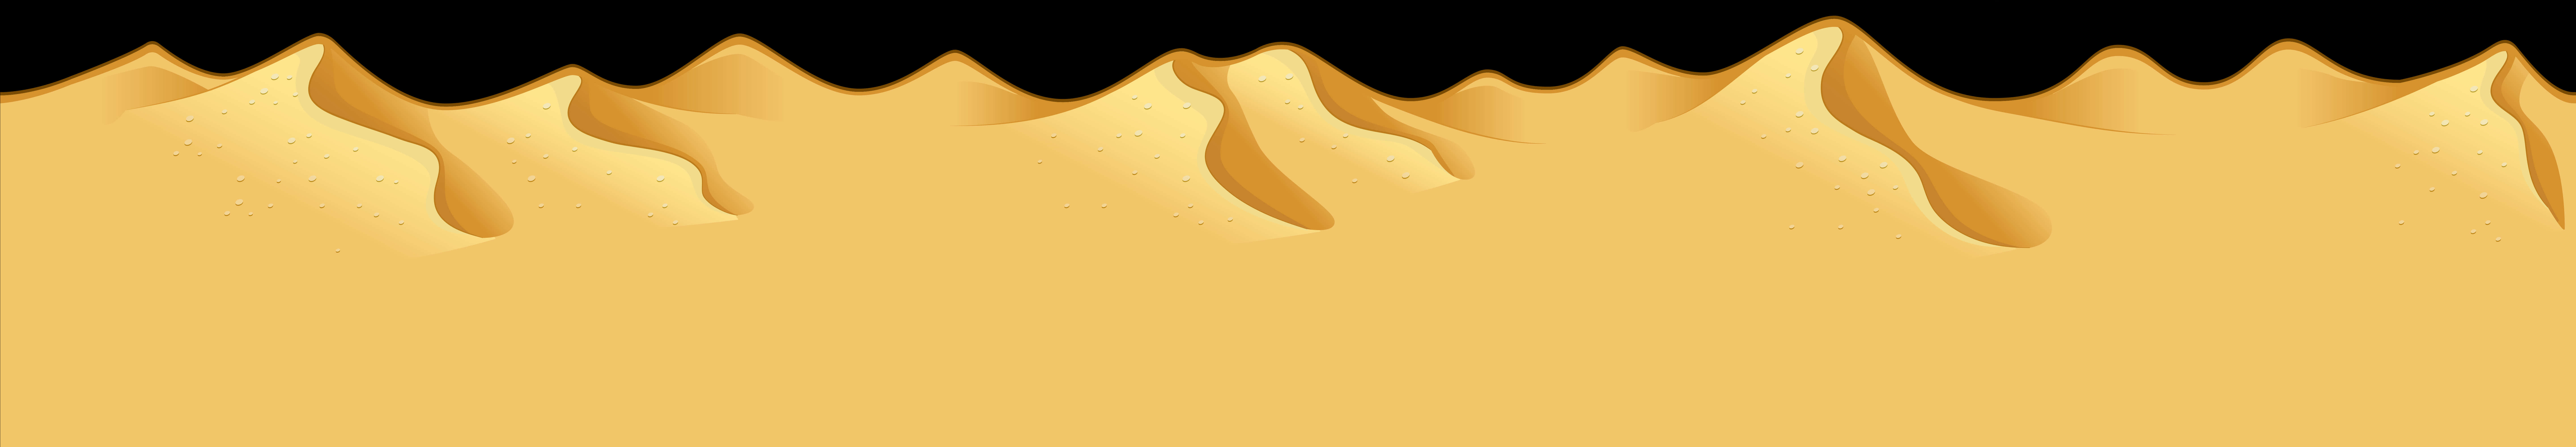 Desert Dunes Silhouette PNG